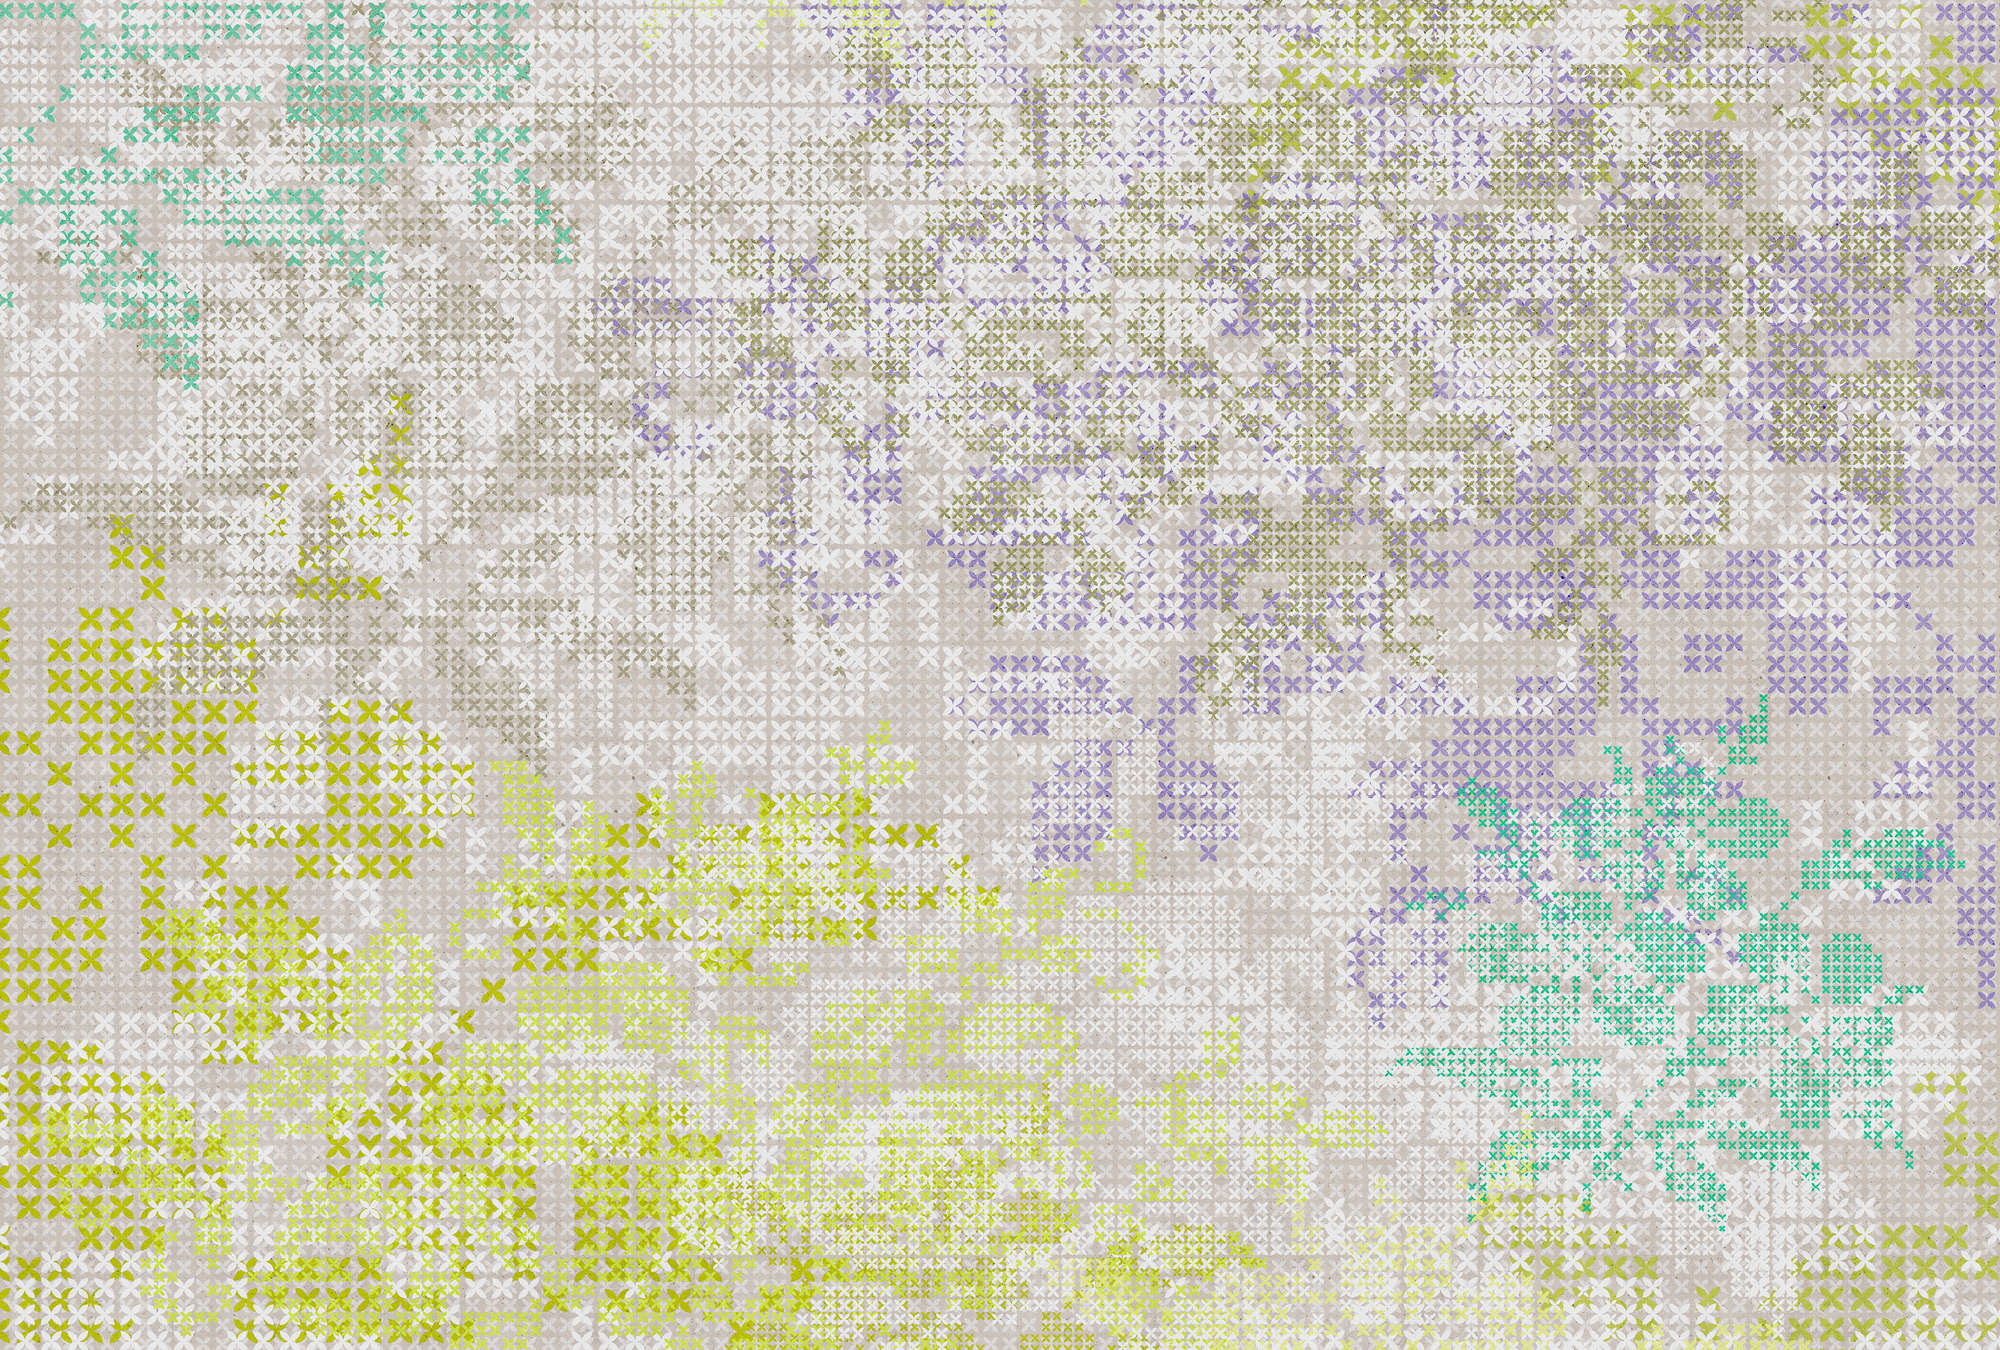             Papel pintado de flores con patrón de píxeles - Colorido, gris
        